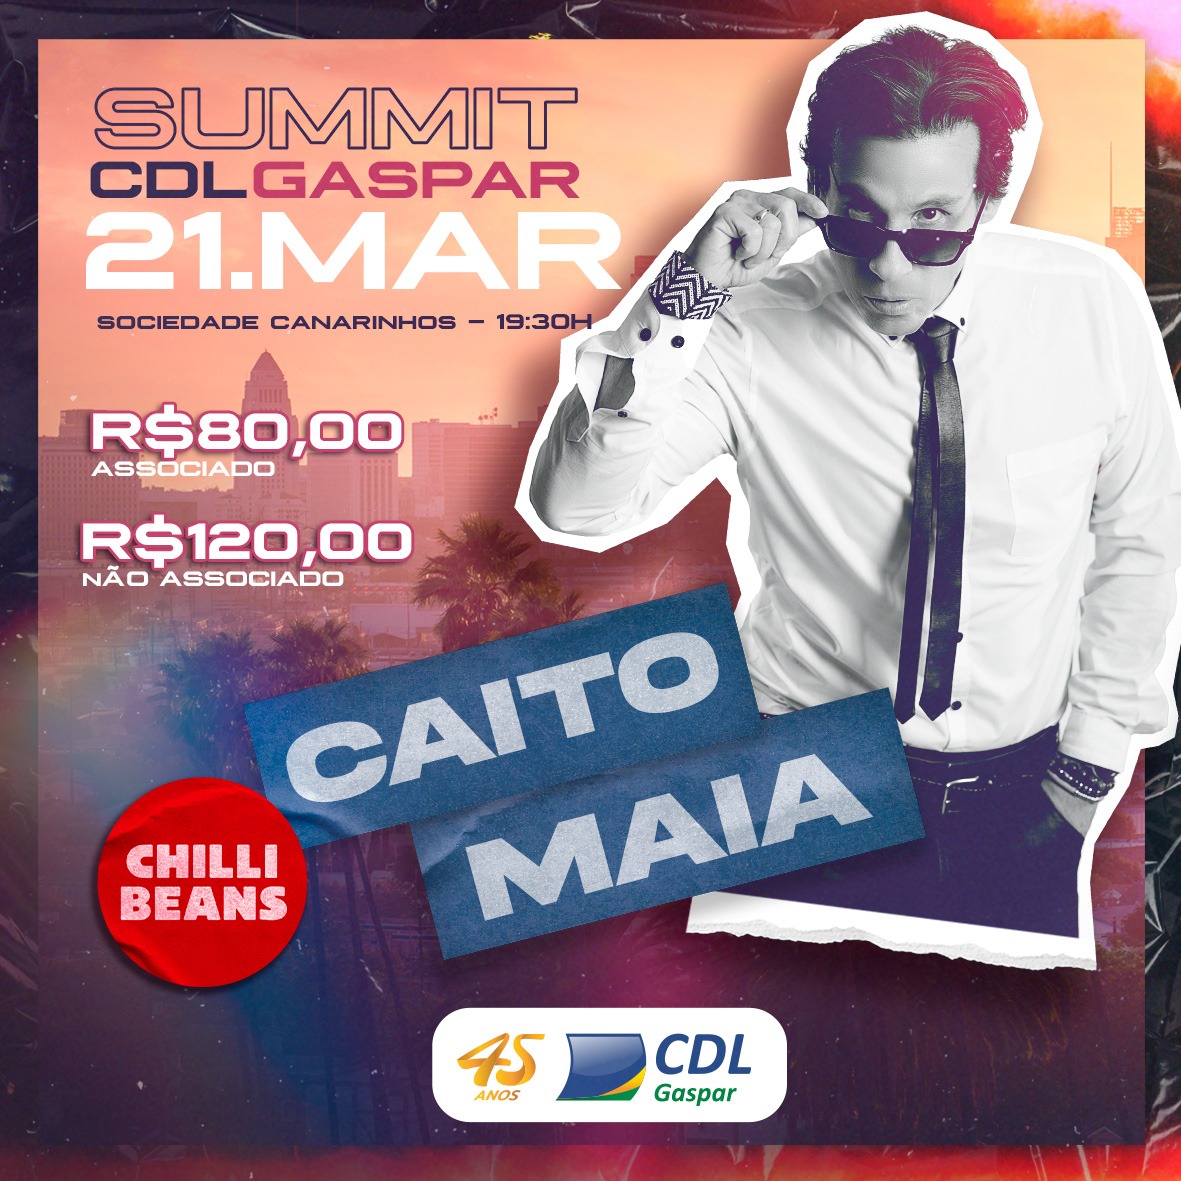 Caito Maia, é o palestrante do Summit CDL Gaspar